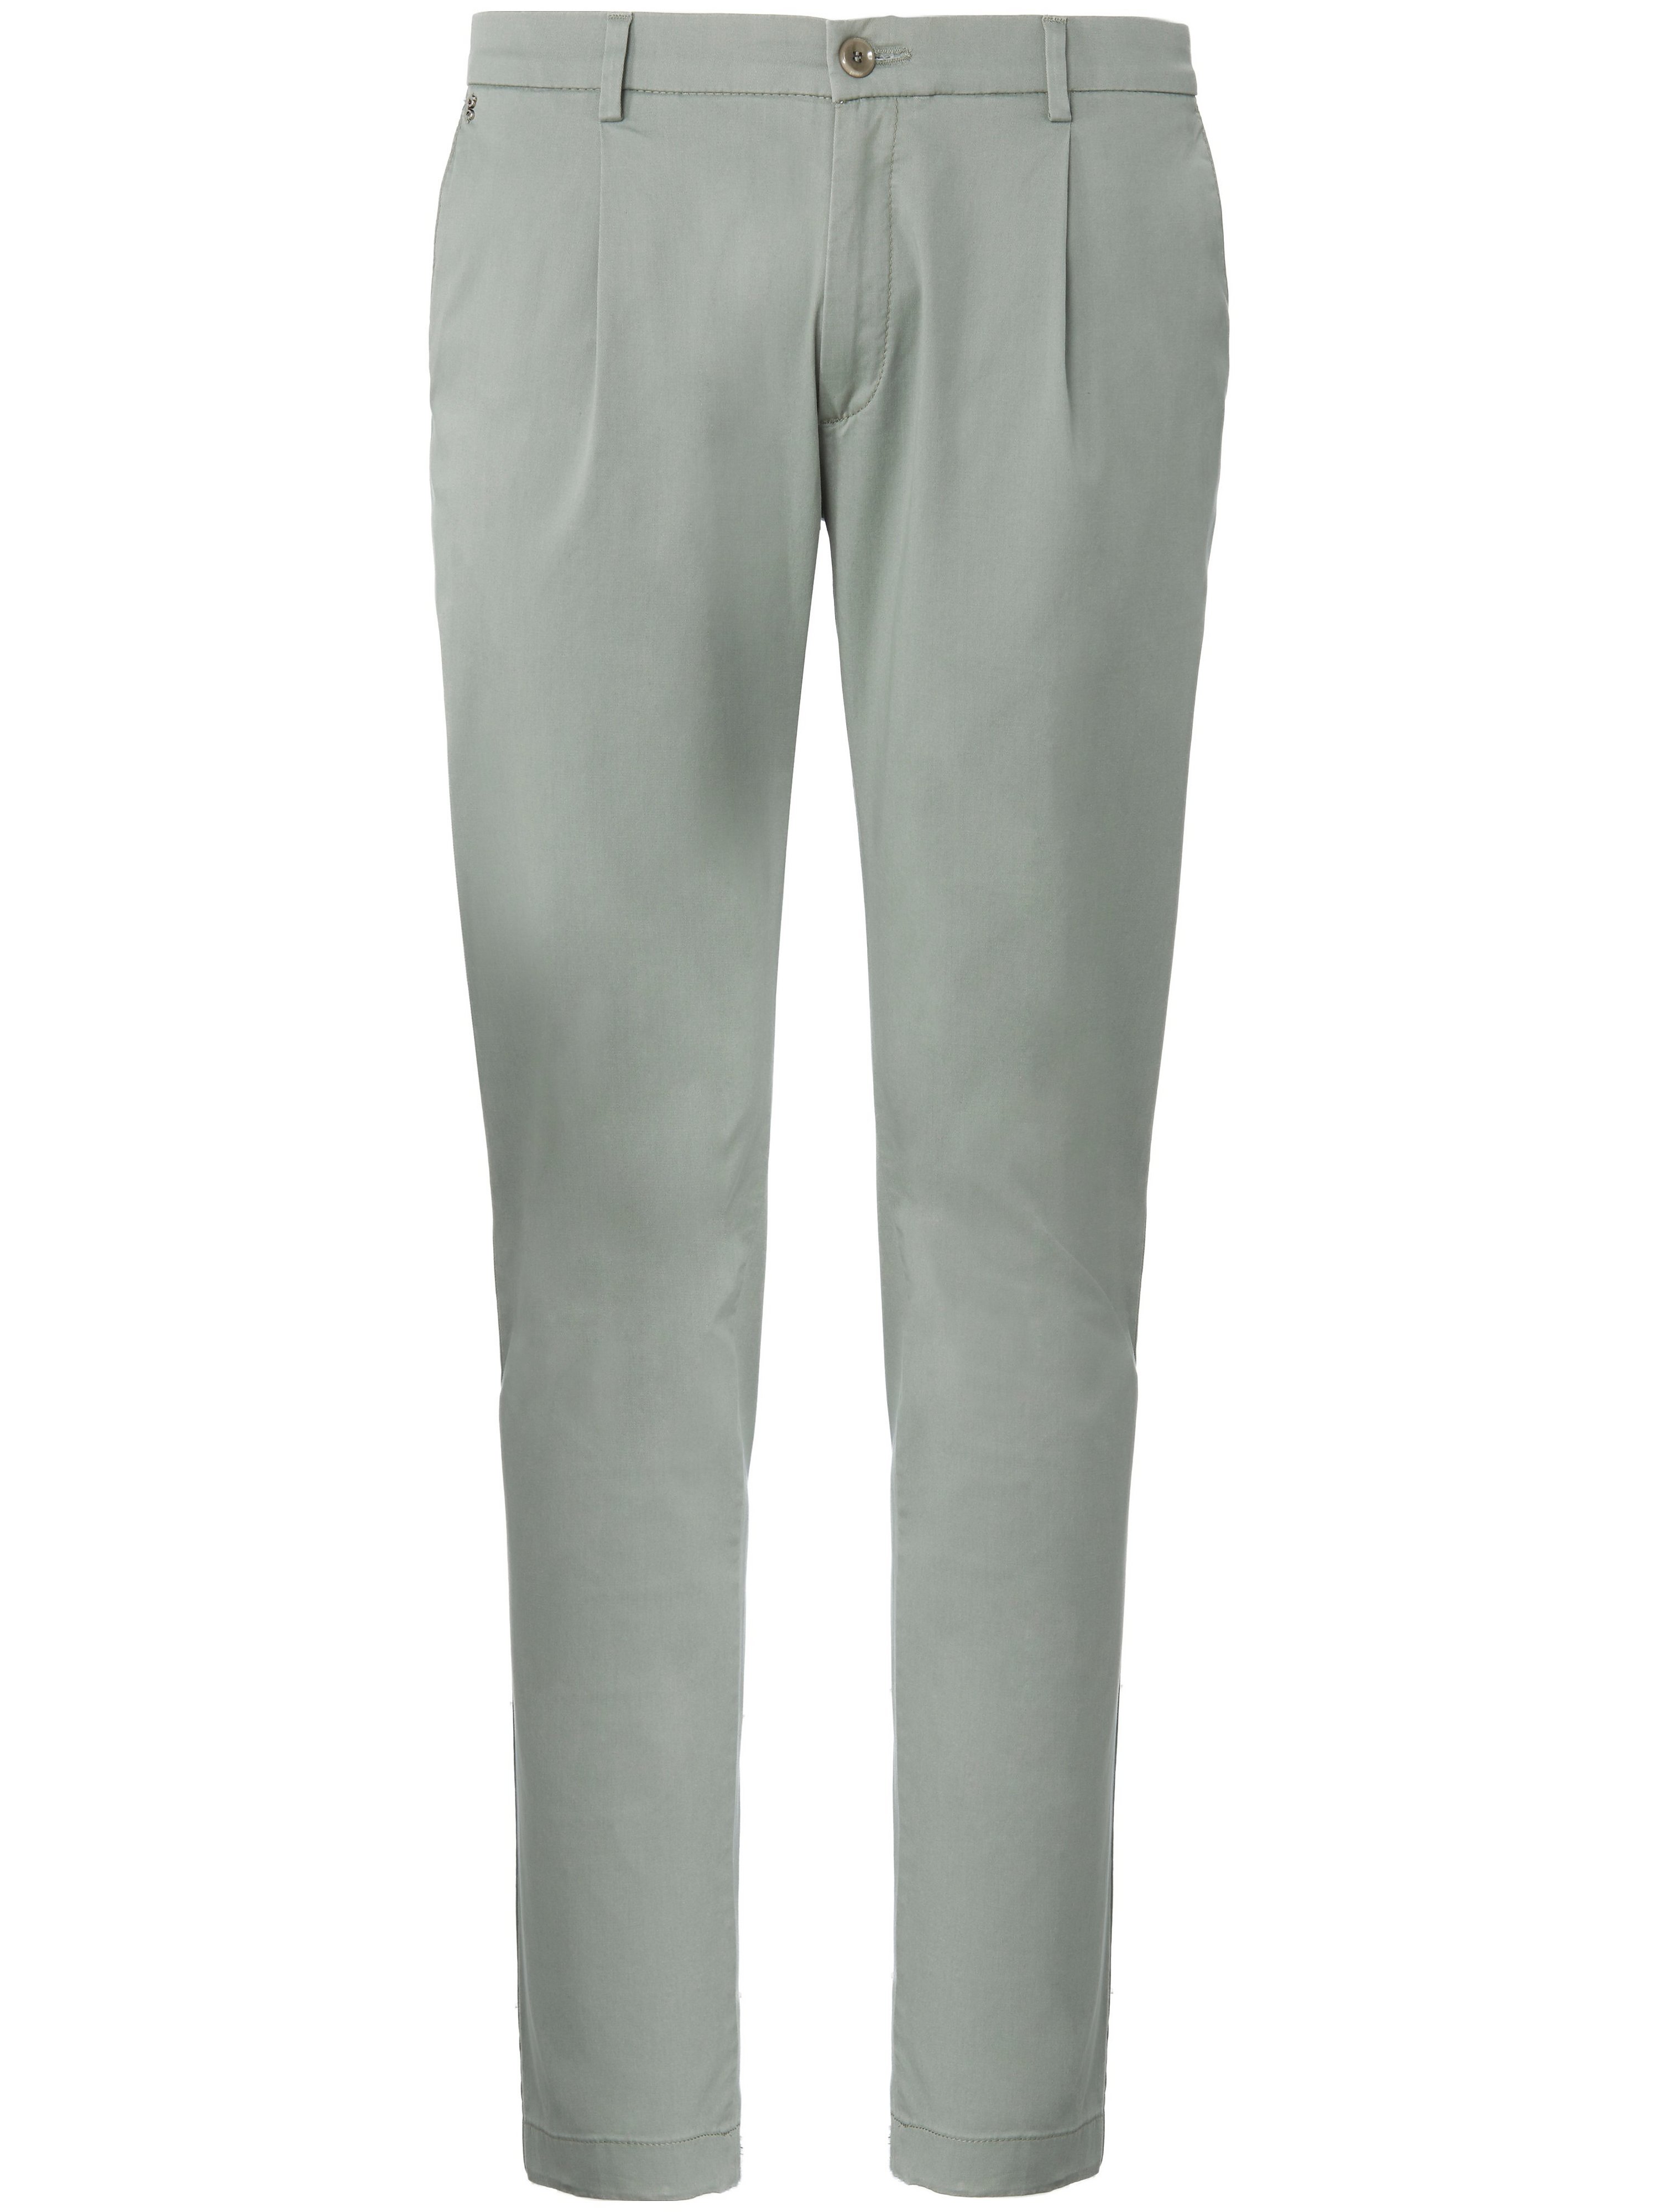 Le pantalon à pinces modèle Sergio  gardeur vert taille 25